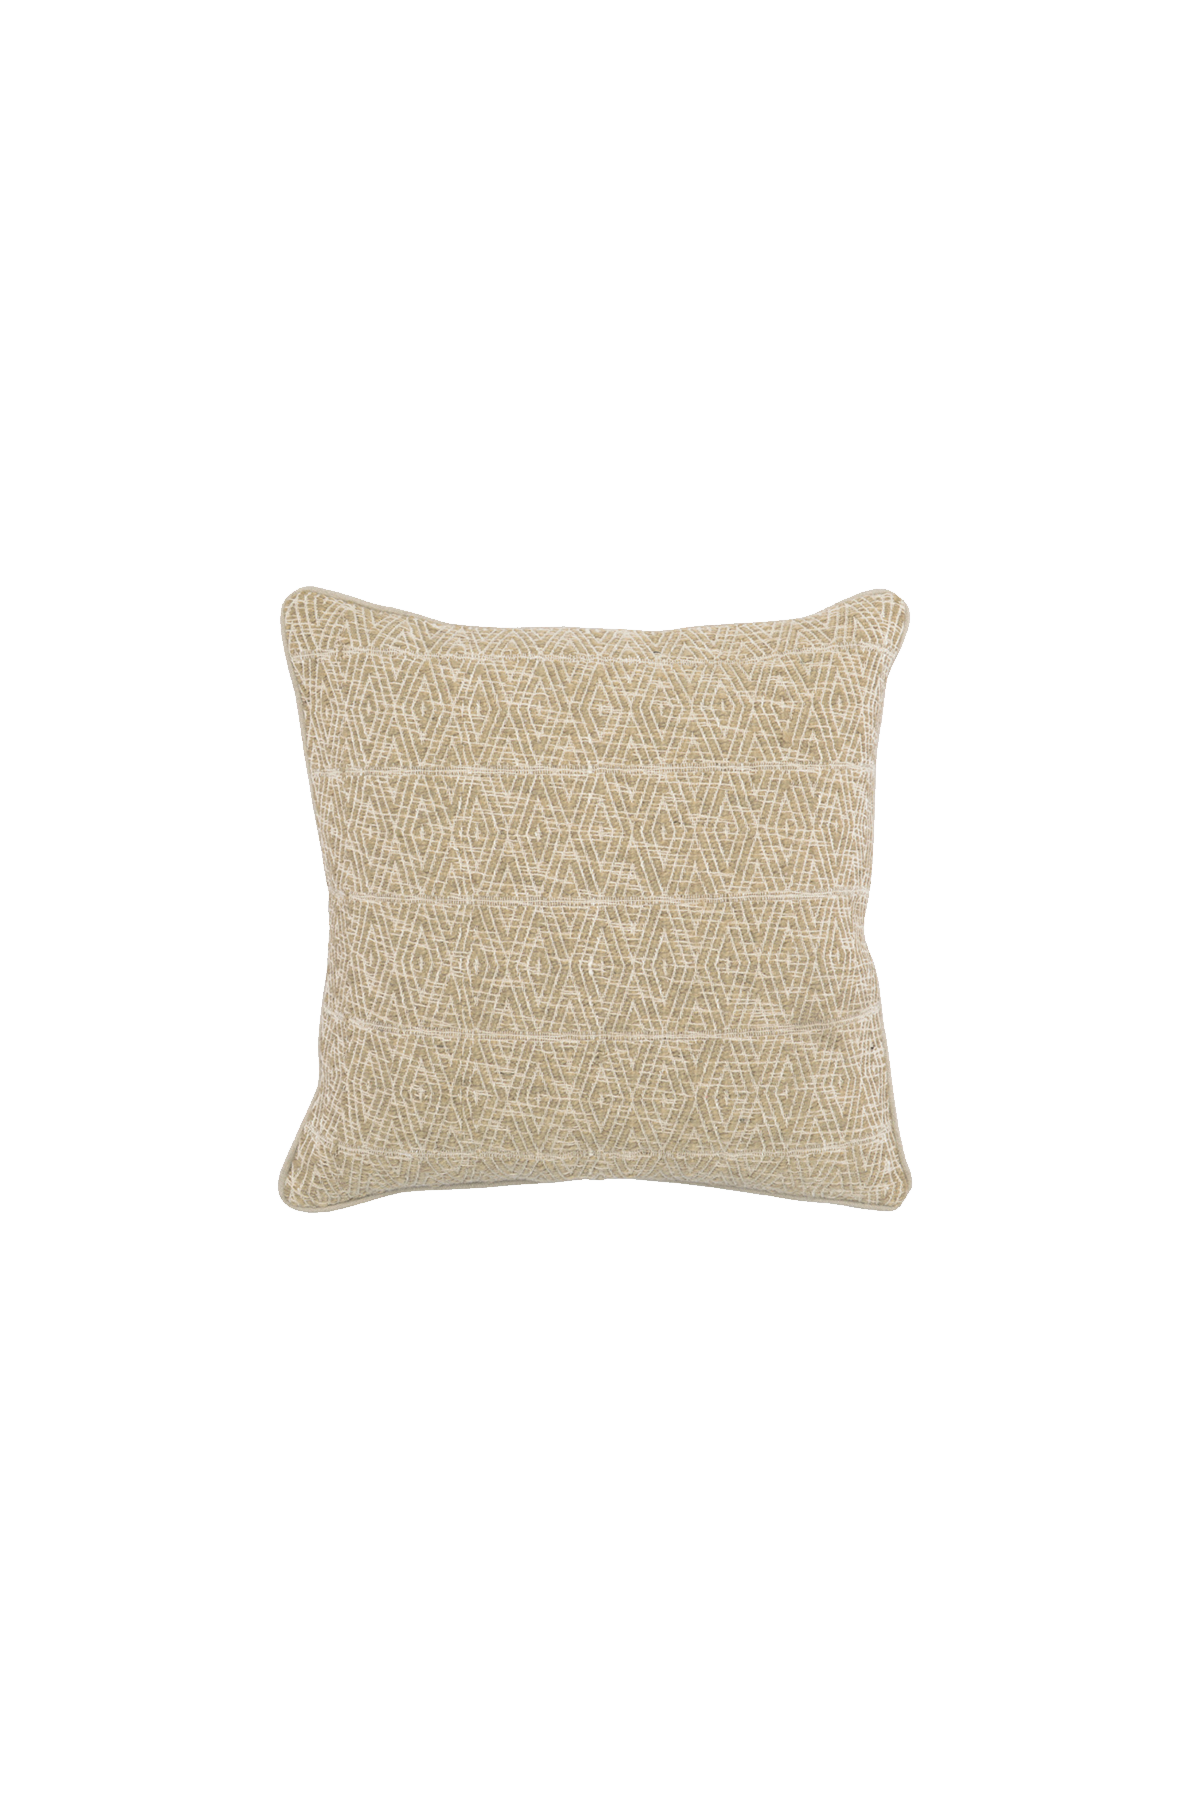 Barron Pillow